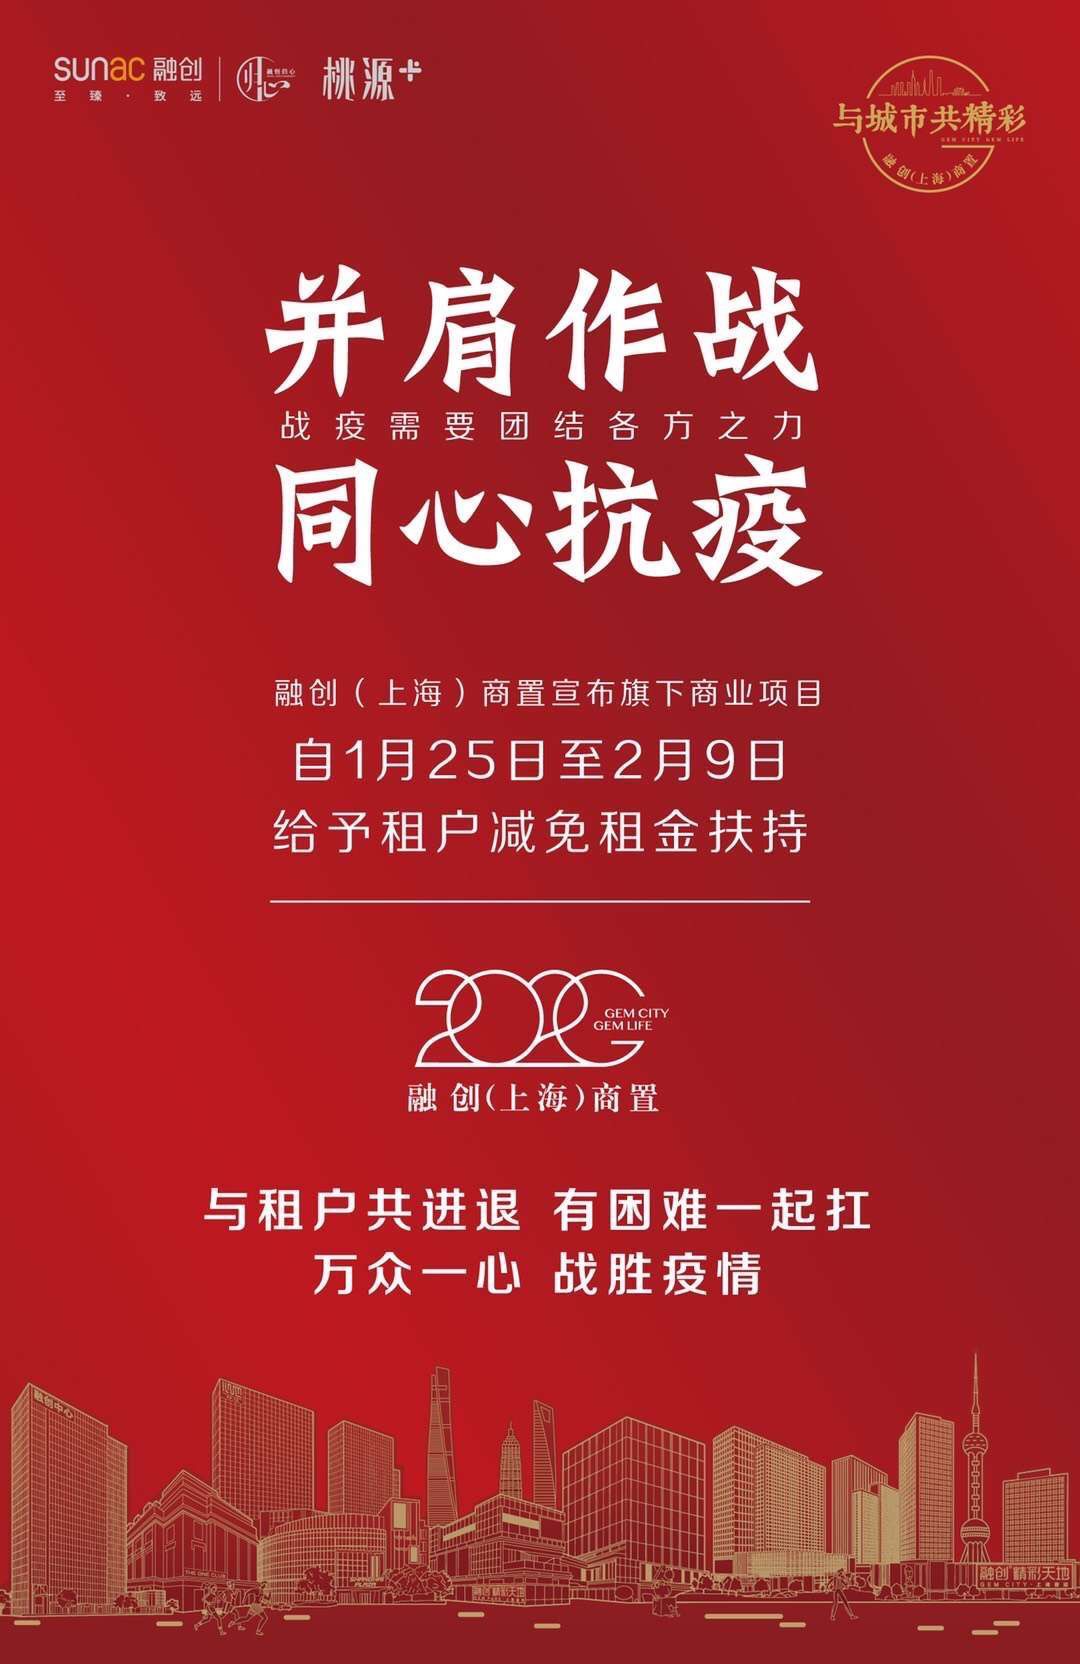 融创上海减免旗下商业项目1.25-2.9期间租金